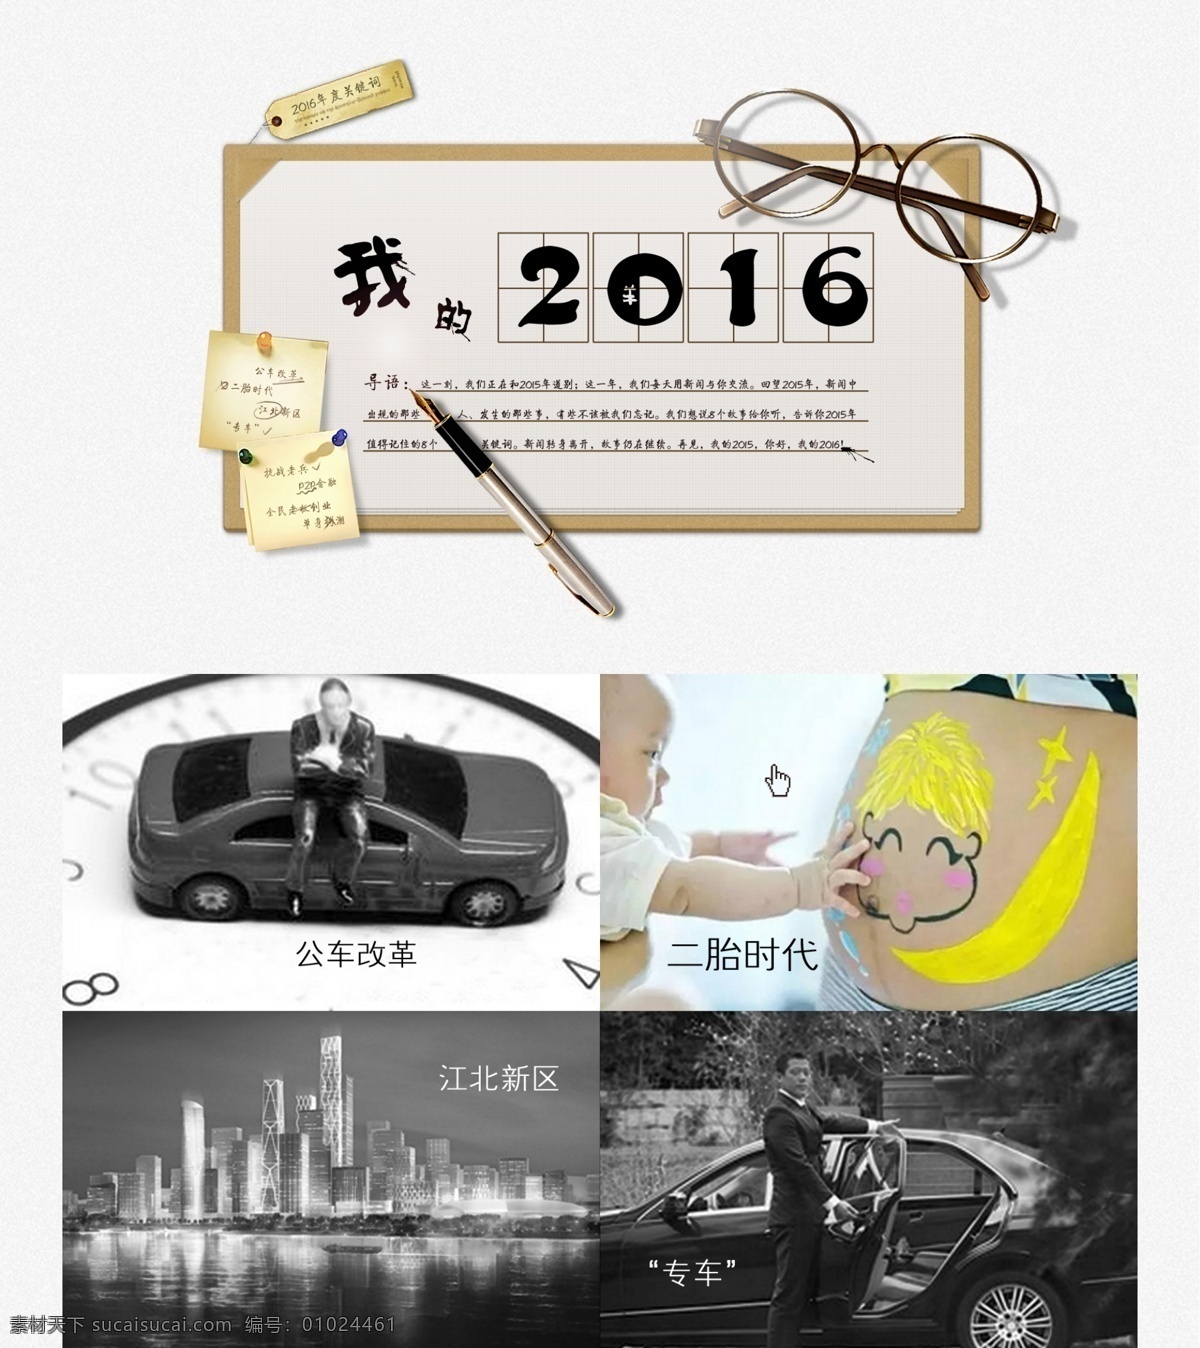 我的2015 年度总结 关键词 2016 文具 钢笔 眼镜 便签 笔记本 墨点 钉子